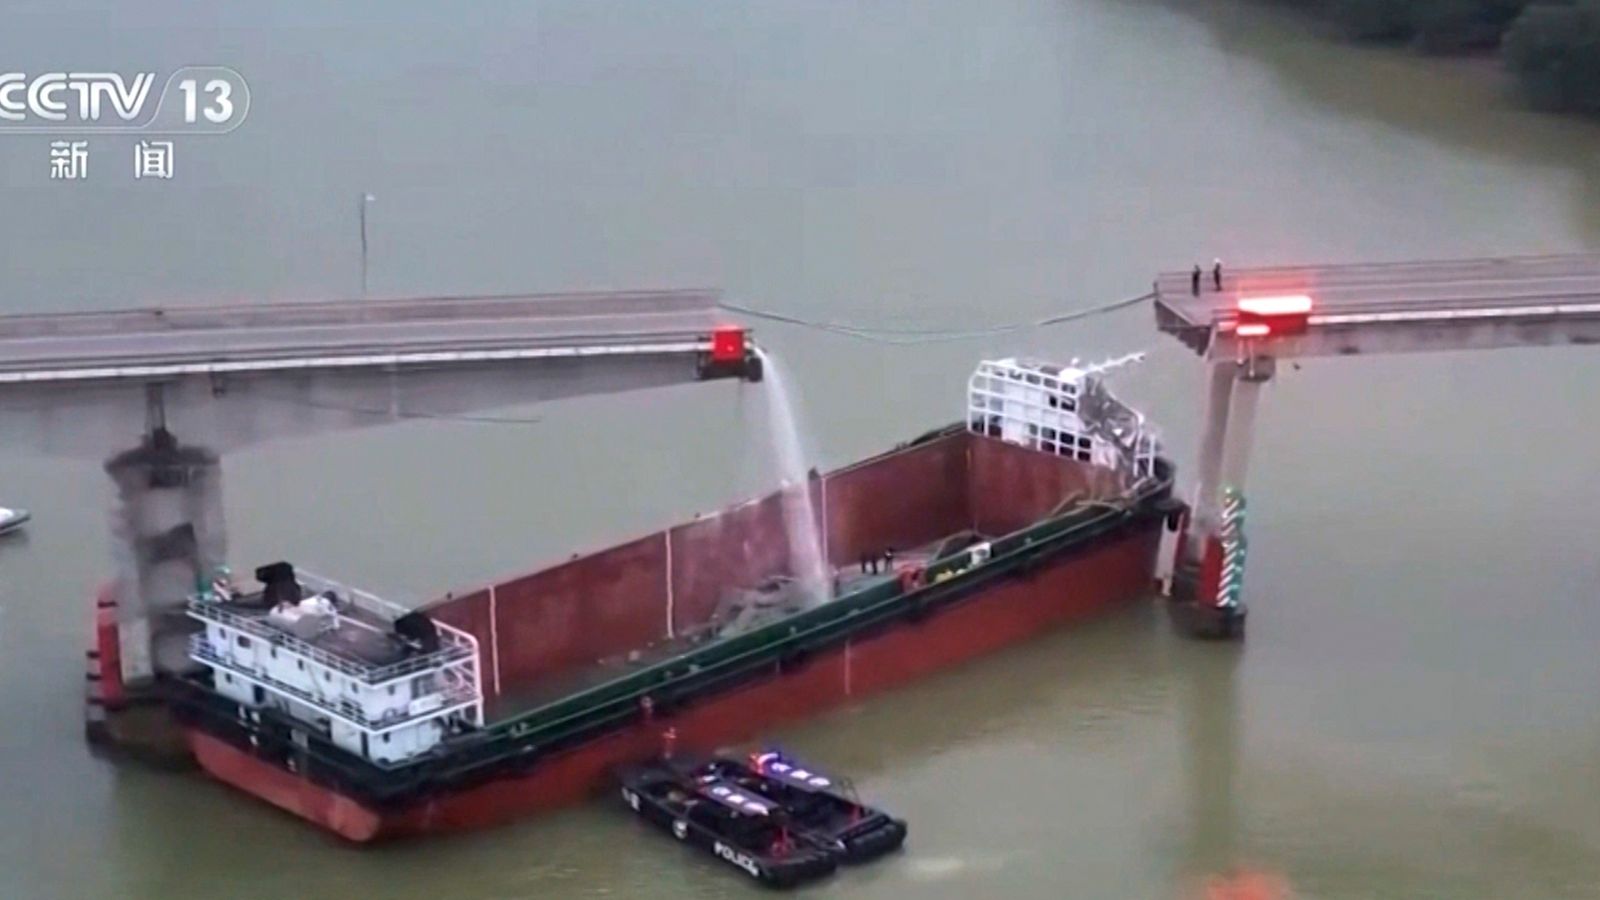 Kinija: penki žmonės žuvo baržai susidūrus su tiltu, o transporto priemonės nuskendo žemiau esančiuose vandenyse  pasaulio naujienos